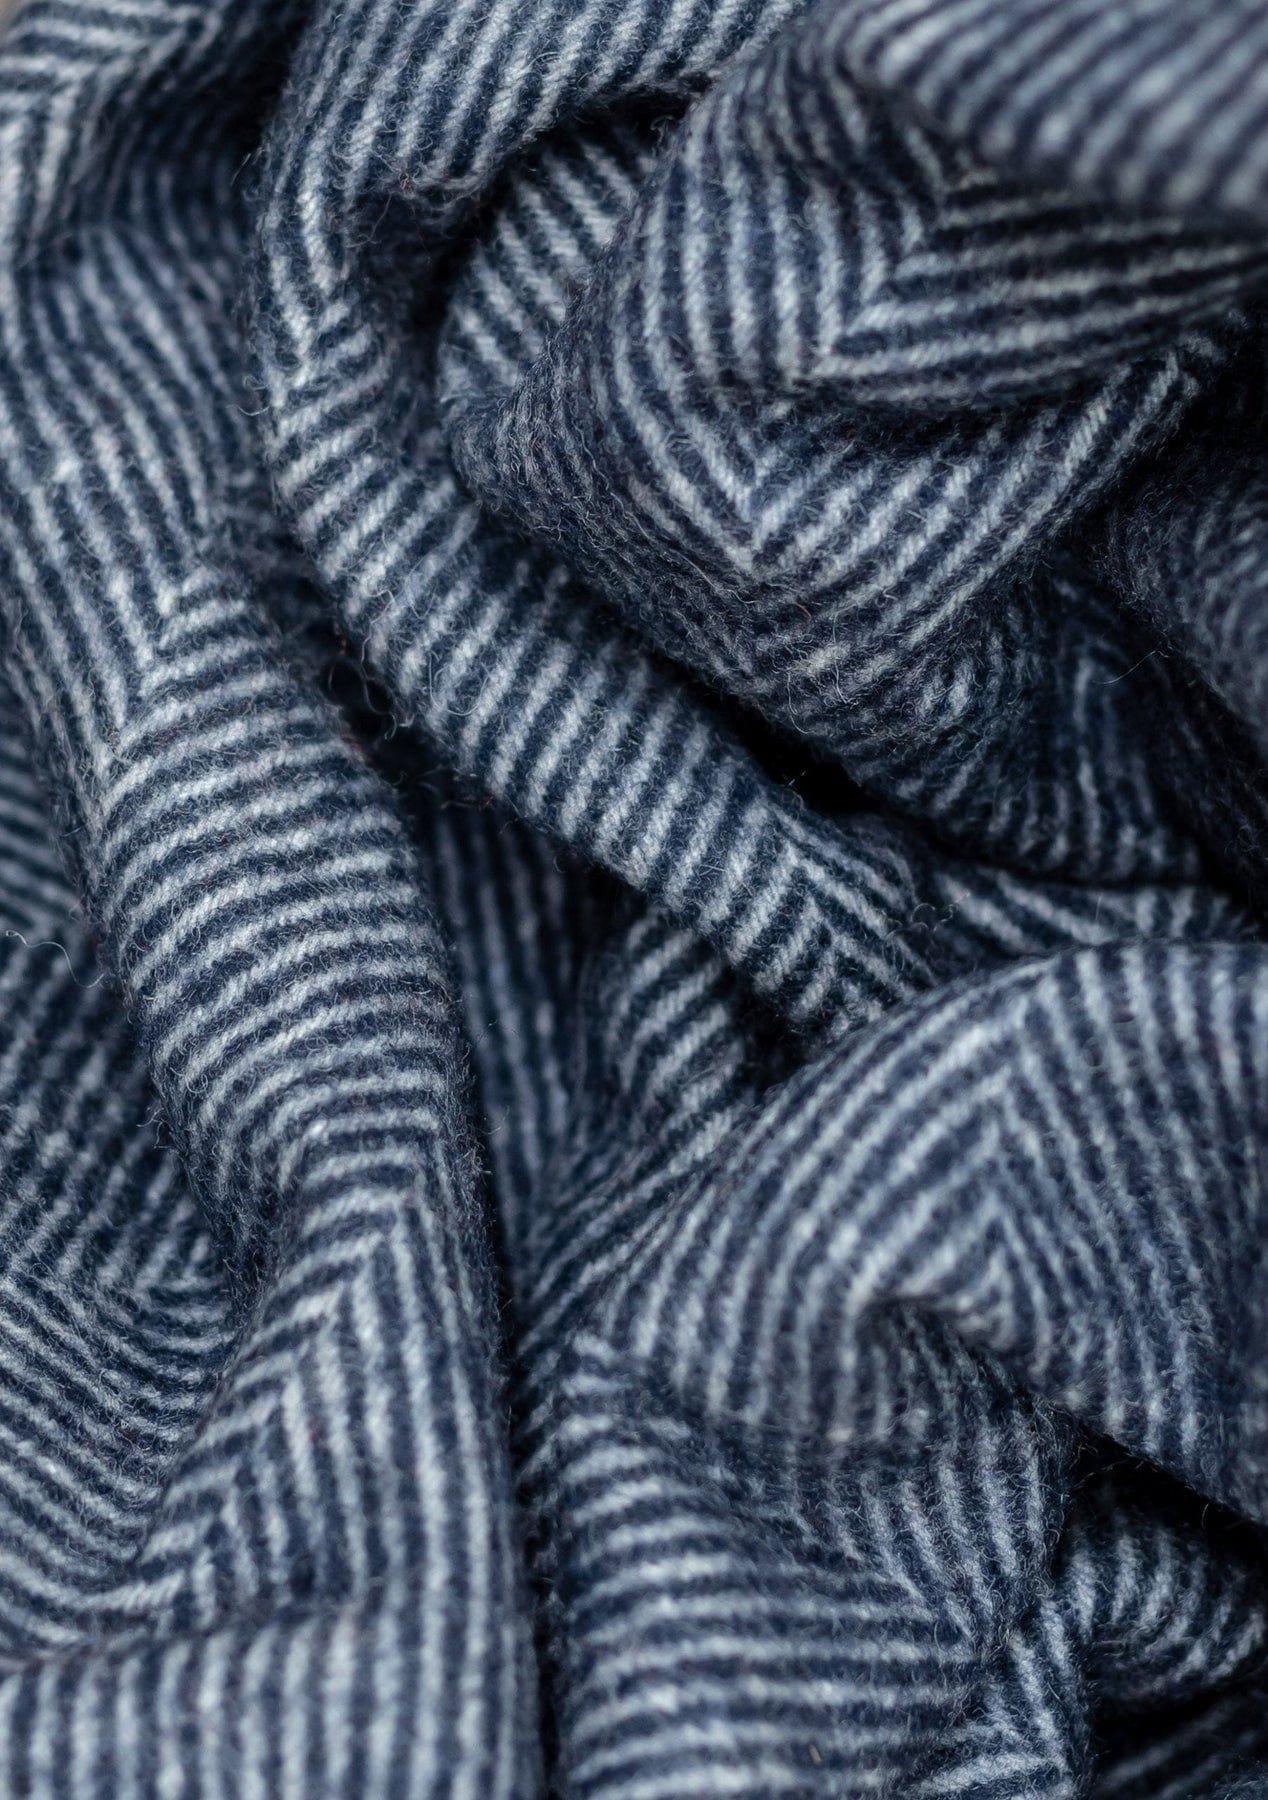 PRIOR SHOP Blankets Navy Herringbone Recycled Wool Blanket